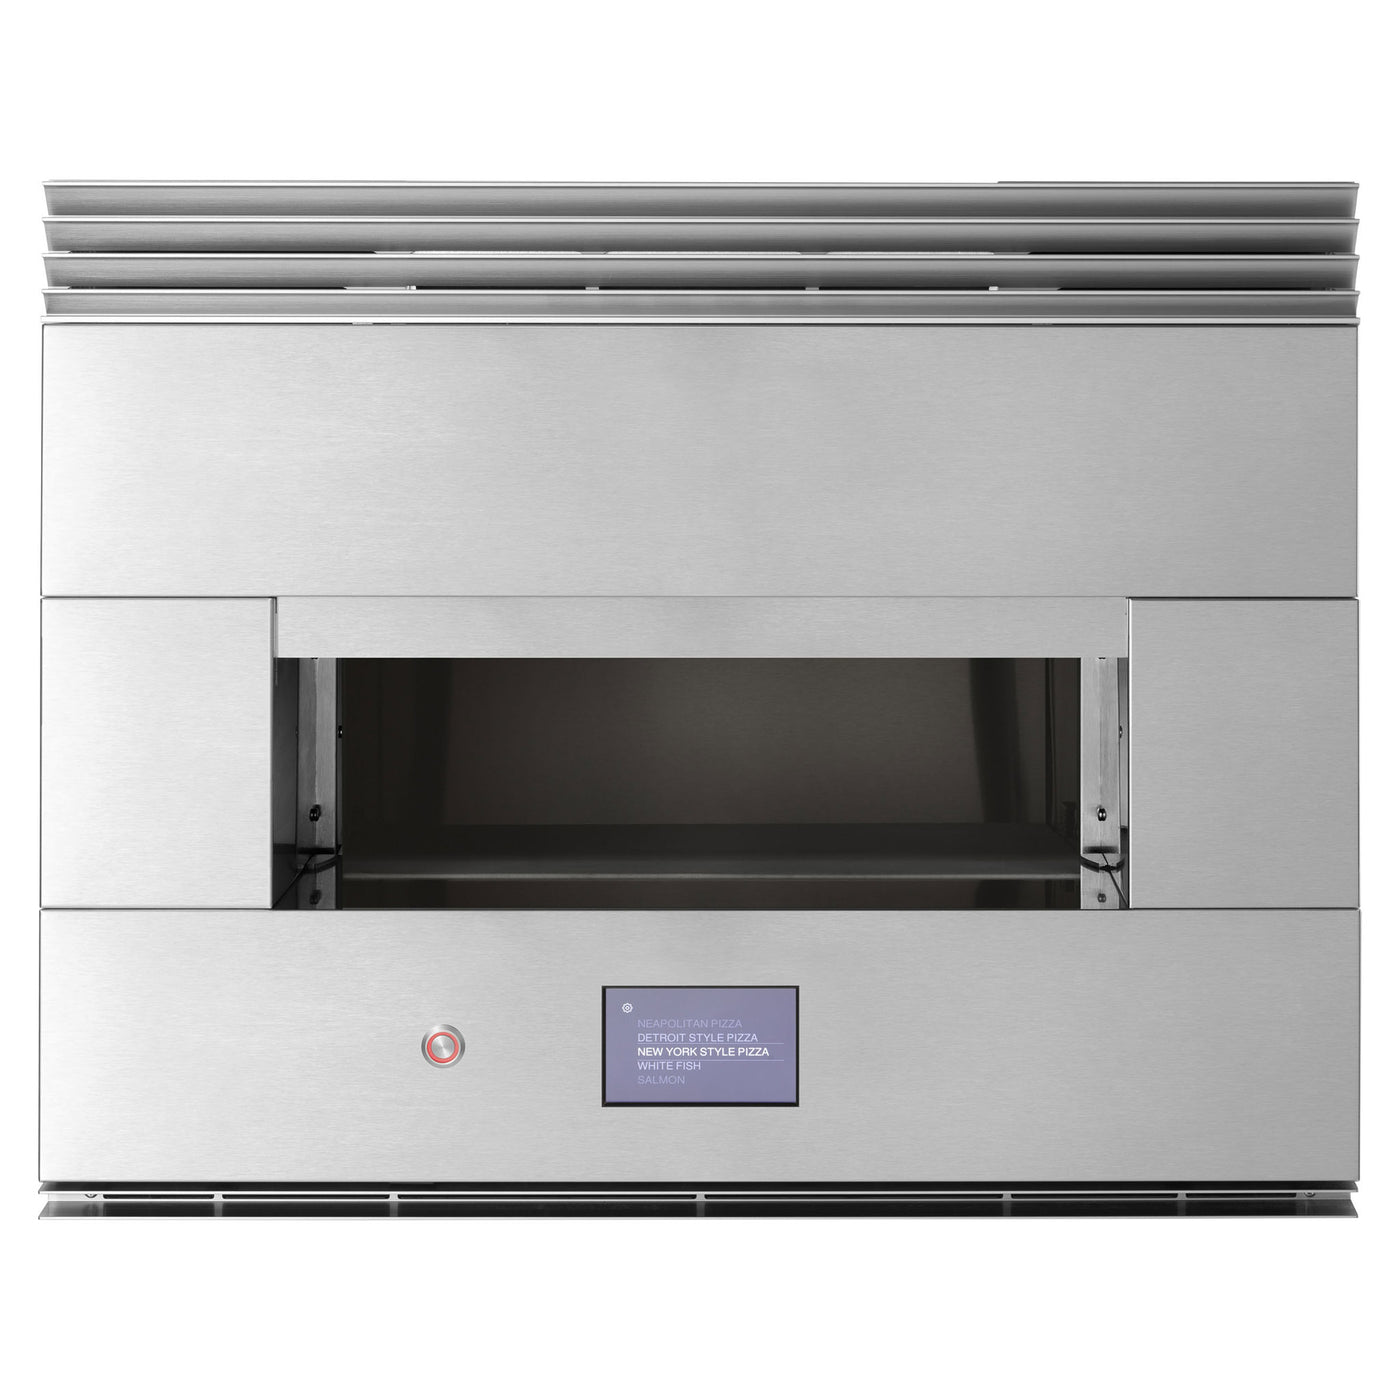 GE-Monogram-pizza-oven-ZEP30FRSS